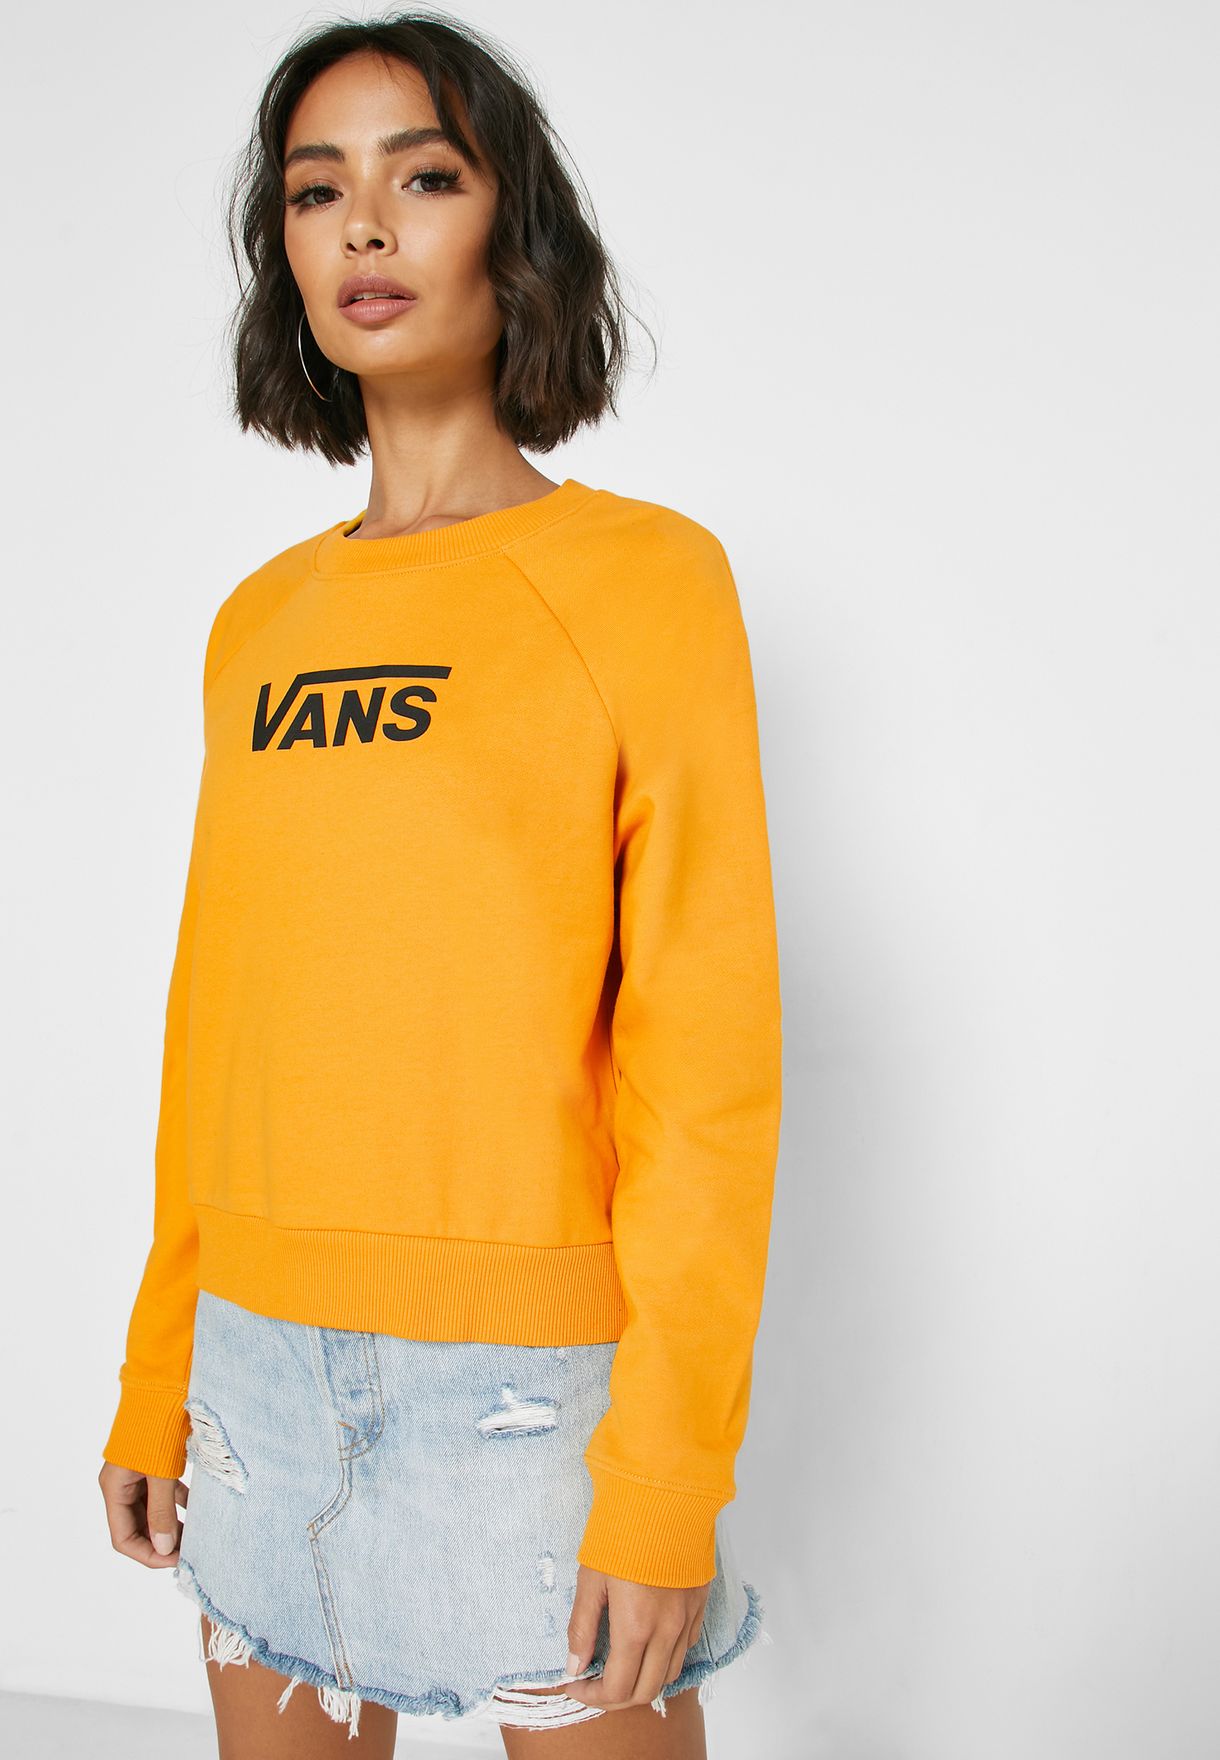 vans yellow sweatshirt